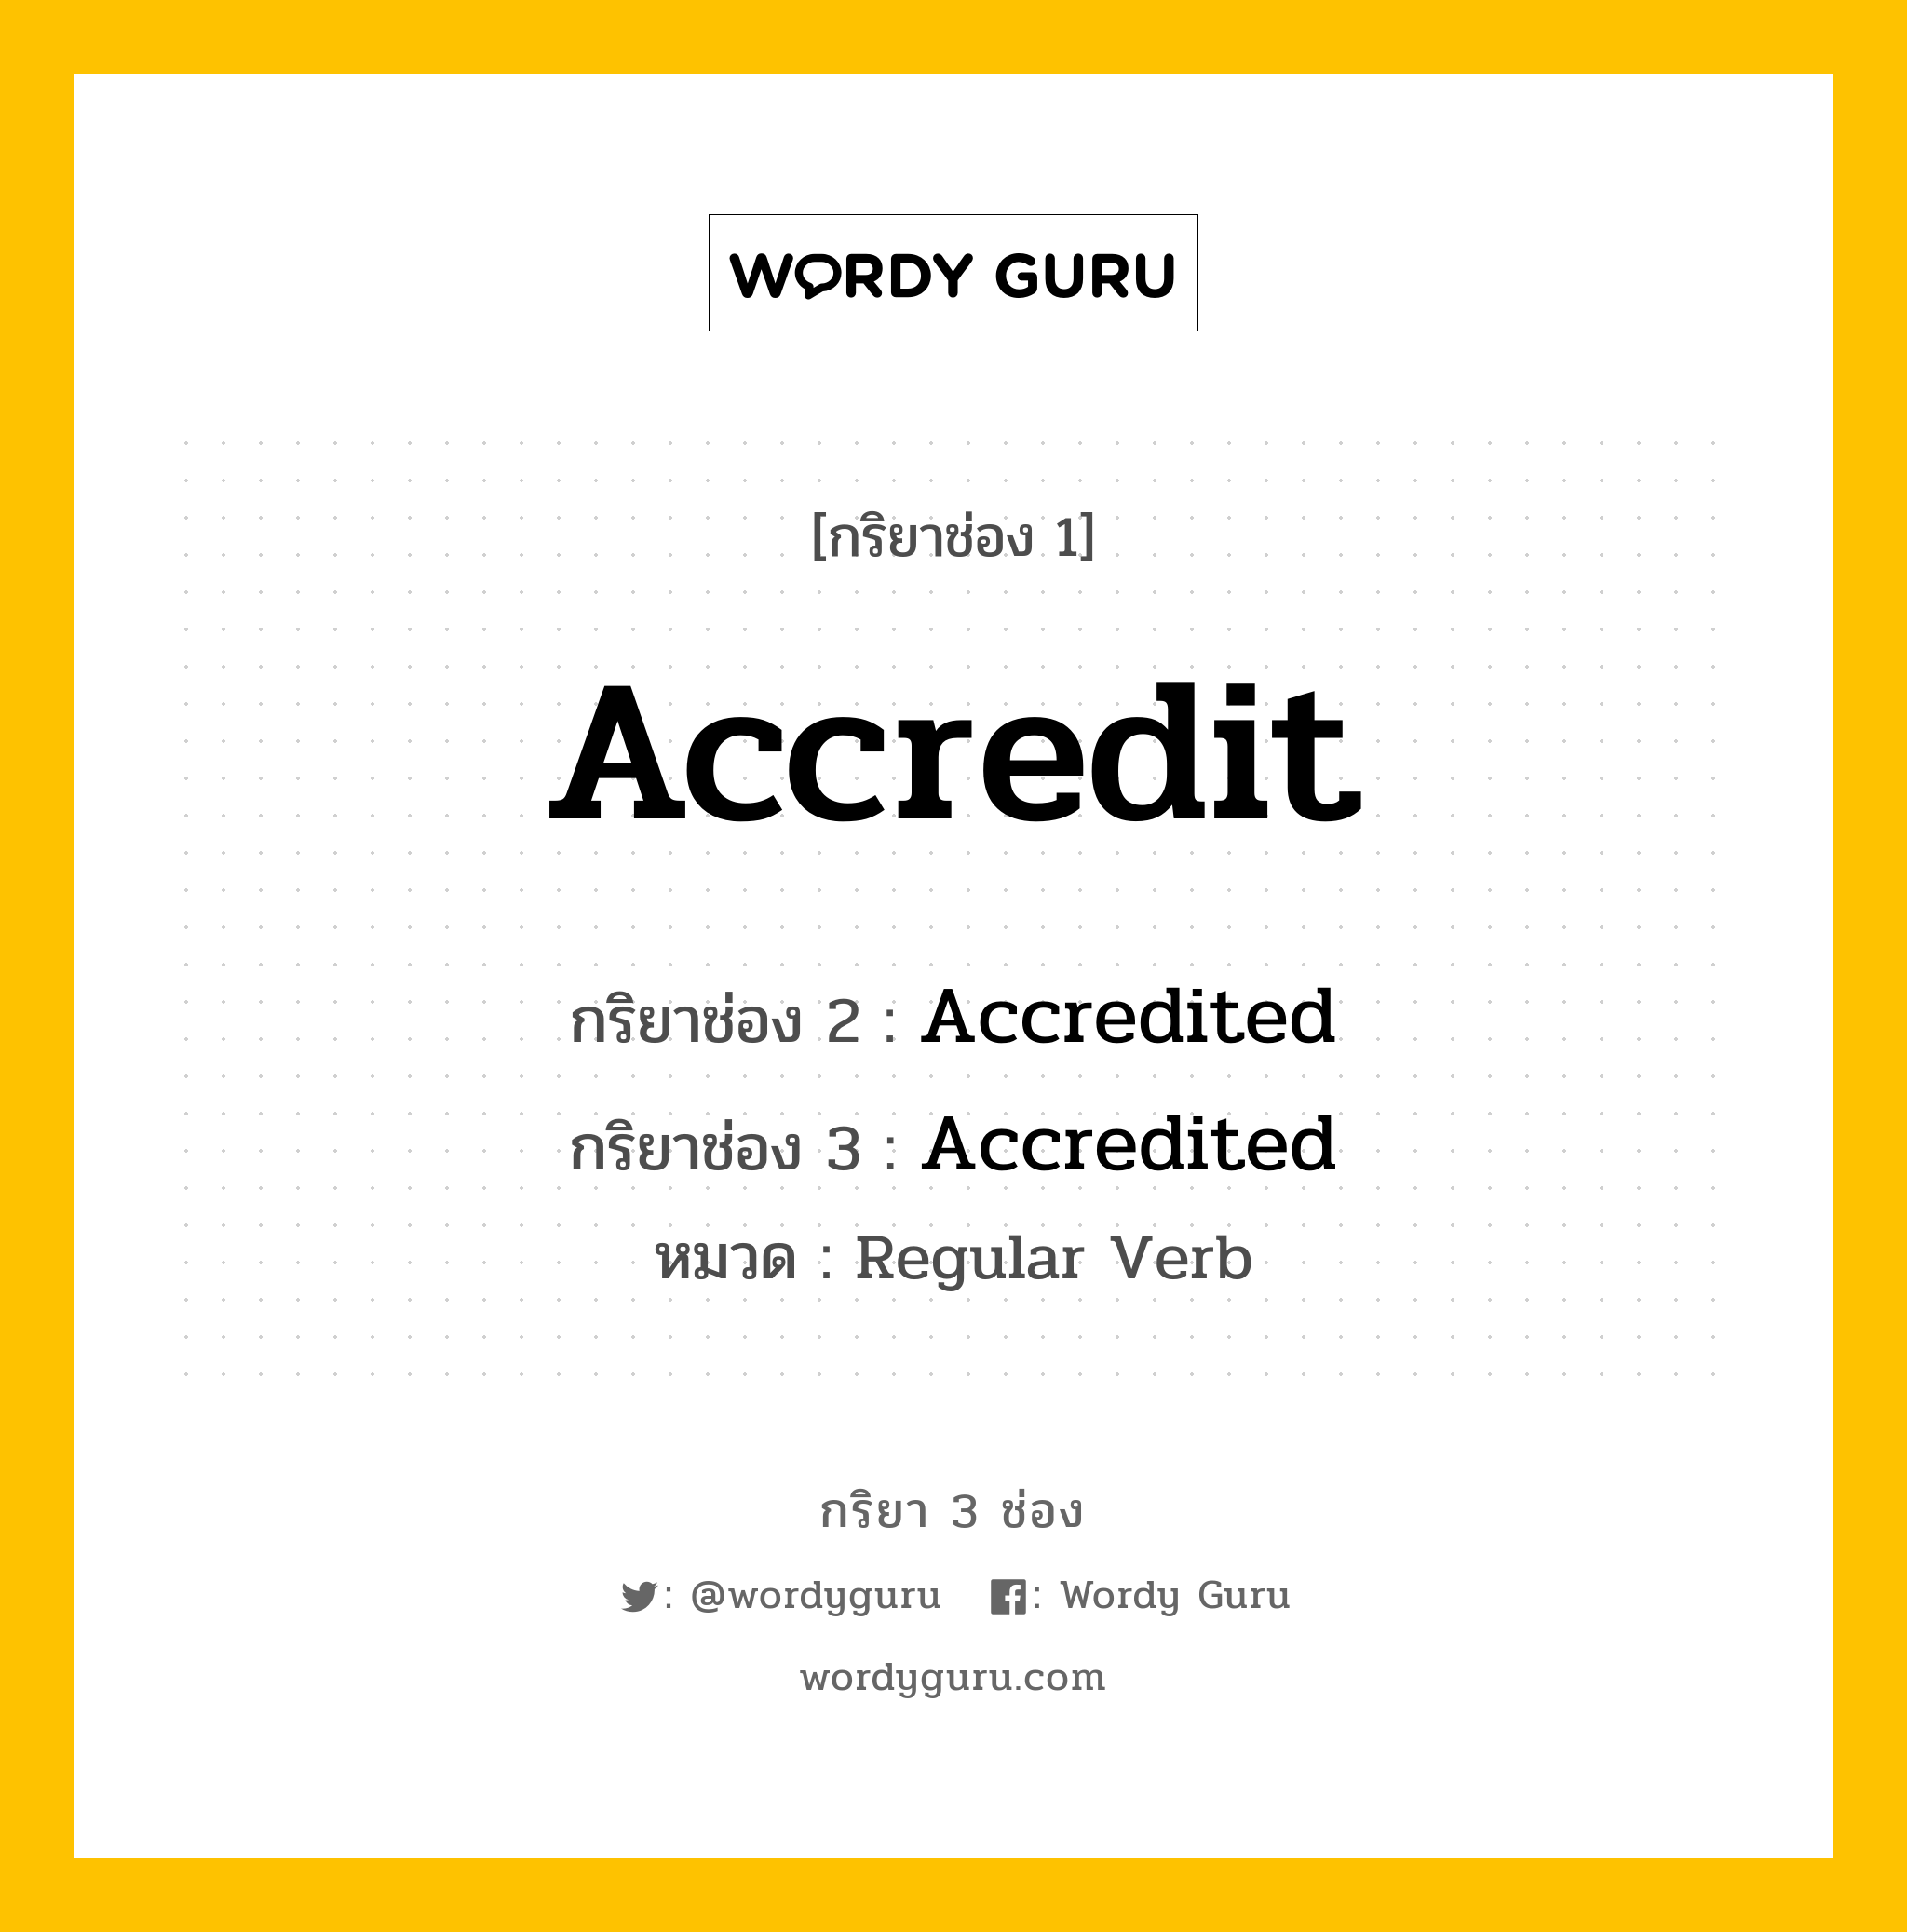 Accredit มีกริยา 3 ช่องอะไรบ้าง? คำศัพท์ในกลุ่มประเภท Regular Verb, กริยาช่อง 1 Accredit กริยาช่อง 2 Accredited กริยาช่อง 3 Accredited หมวด Regular Verb หมวด Regular Verb